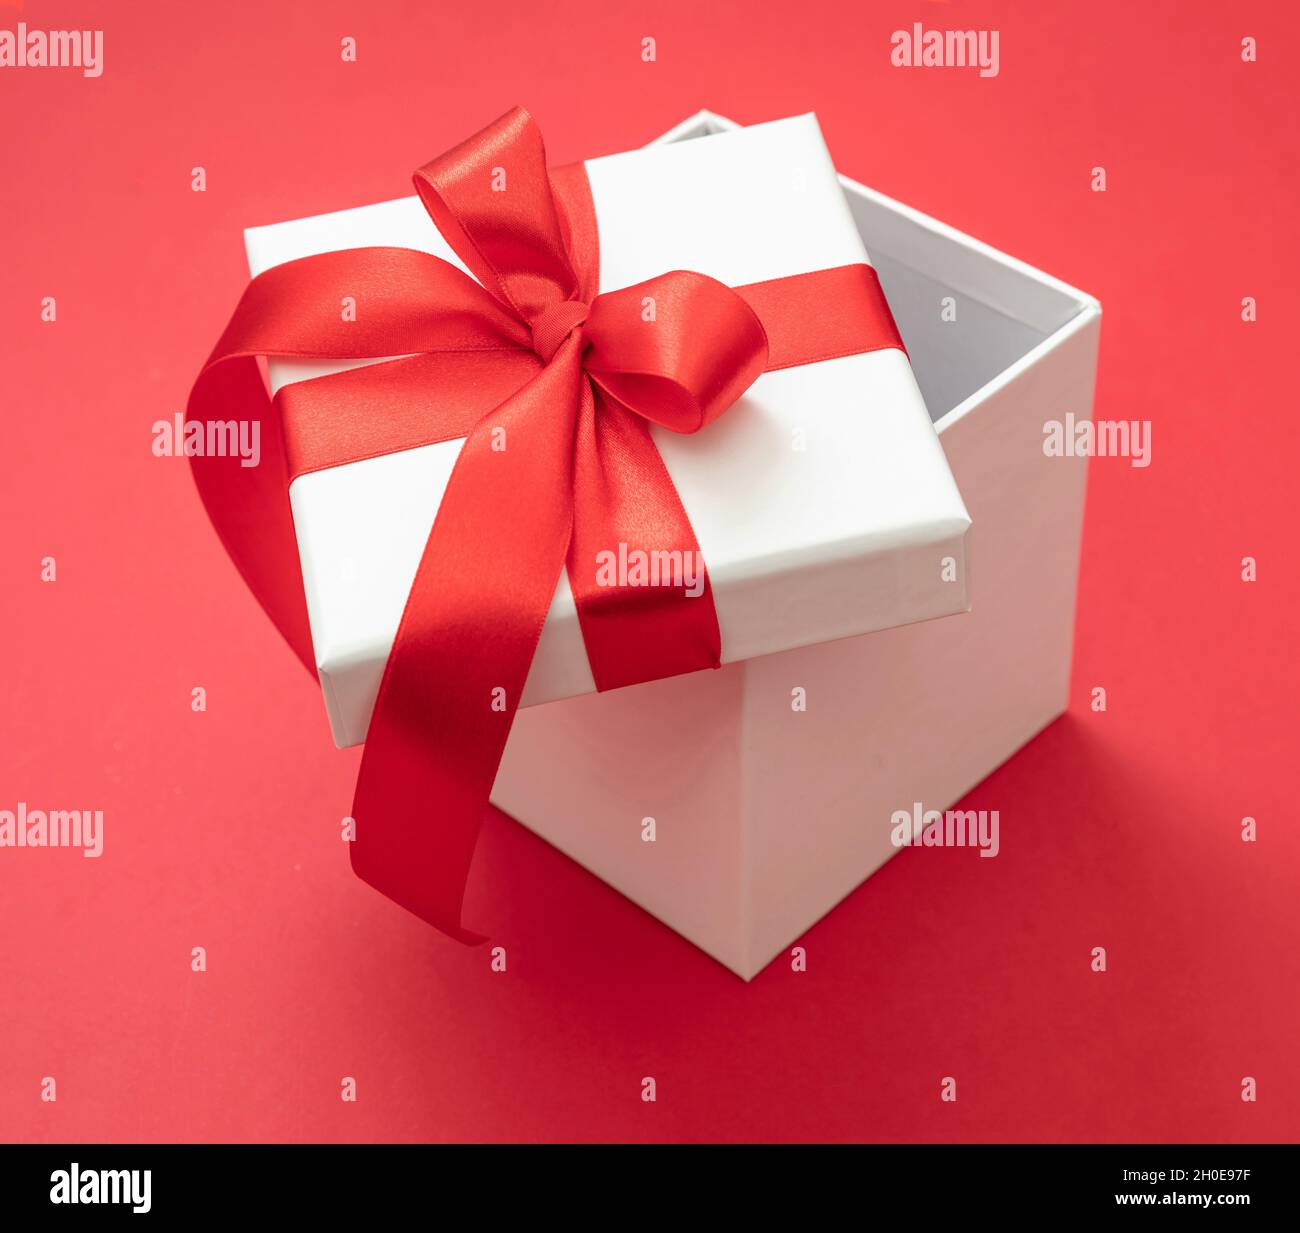 Boîte cadeau de Noël blanche avec ruban rouge noeud ouvert sur fond rouge, surprise de la Saint-Valentin, cadeau de vacances du nouvel an, décoration en satin curly. Banque D'Images